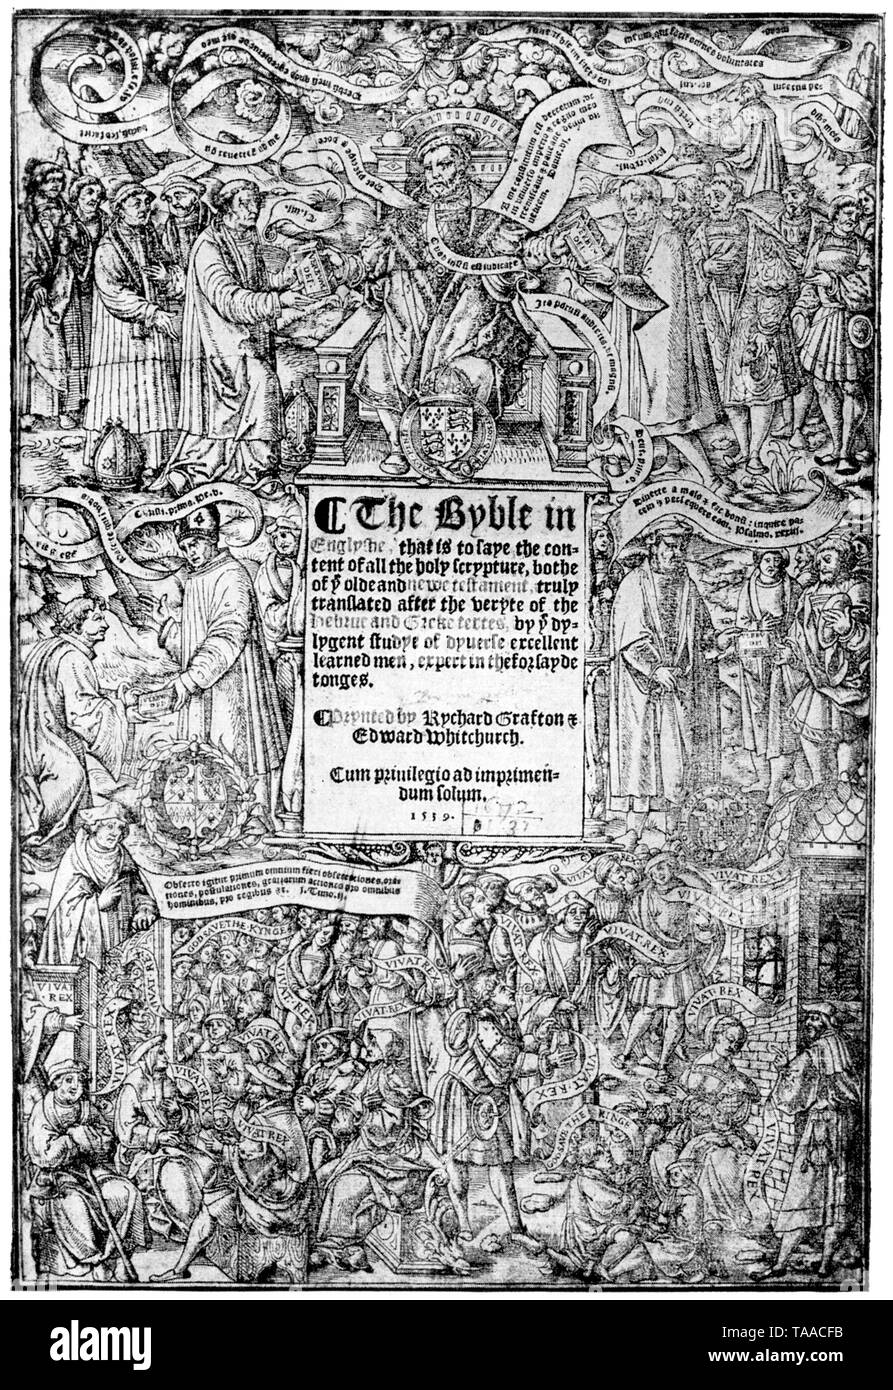 Pagina del titolo della prima edizione di "La grande Bibbia", 1539. Originale nel British Museum. La grande Bibbia è stata la prima edizione autorizzata della Bibbia in lingua inglese ed è stato autorizzato dal Re Enrico VIII (1491-1547) per essere letta nella chiesa di Inghilterra servizi. La grande Bibbia è stata preparata da Myles Coverdale (c1488-1569), sotto la commissione di Thomas, Signore Cromwell (c1485-1540). Foto Stock